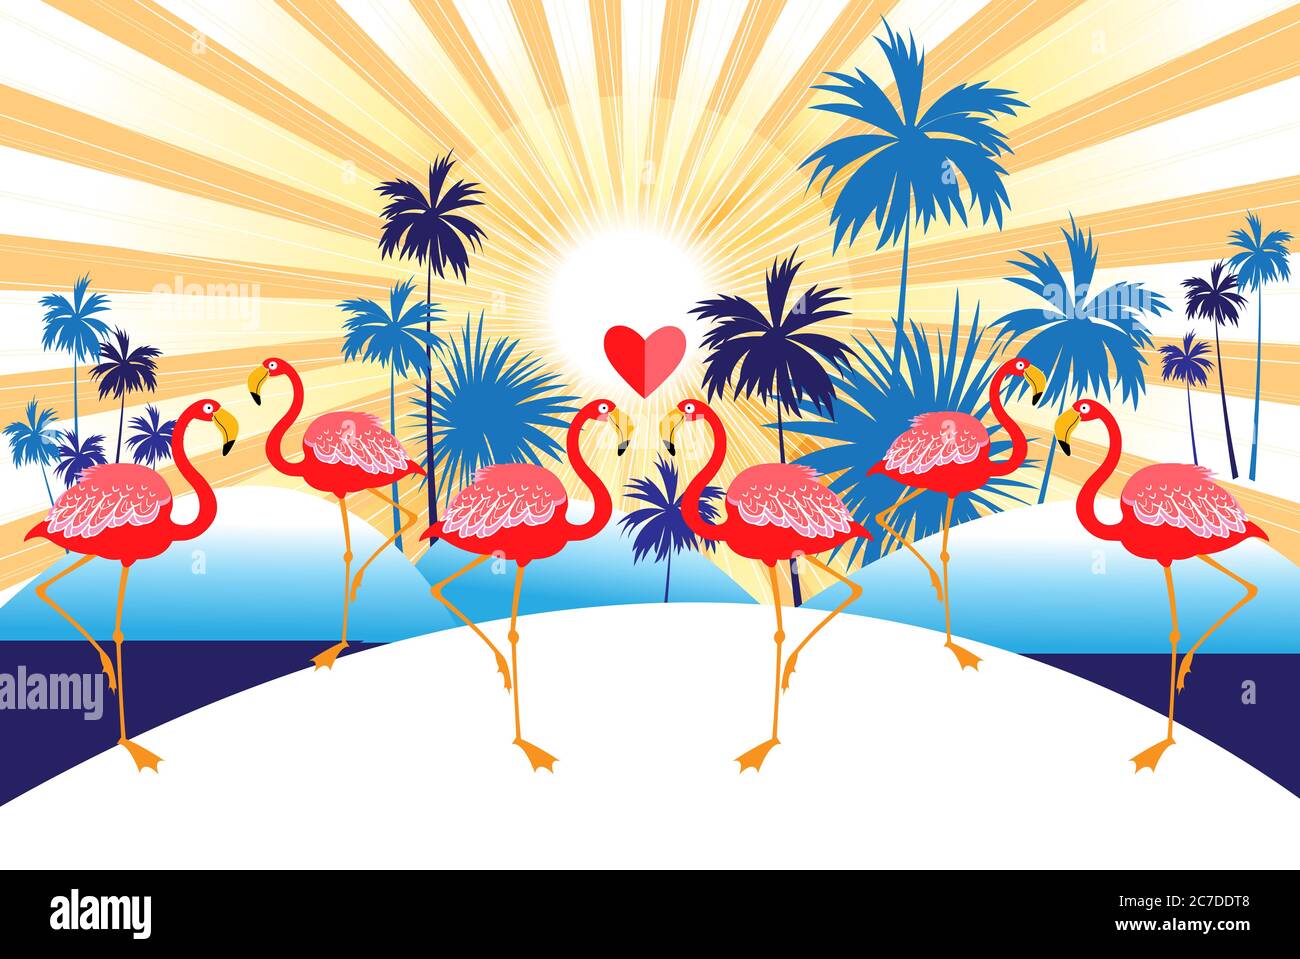 Sfondo vettoriale tropicale con fenicotteri rossi e palme. Design per la pubblicità vacanze esotiche nei tropici. Illustrazione Vettoriale